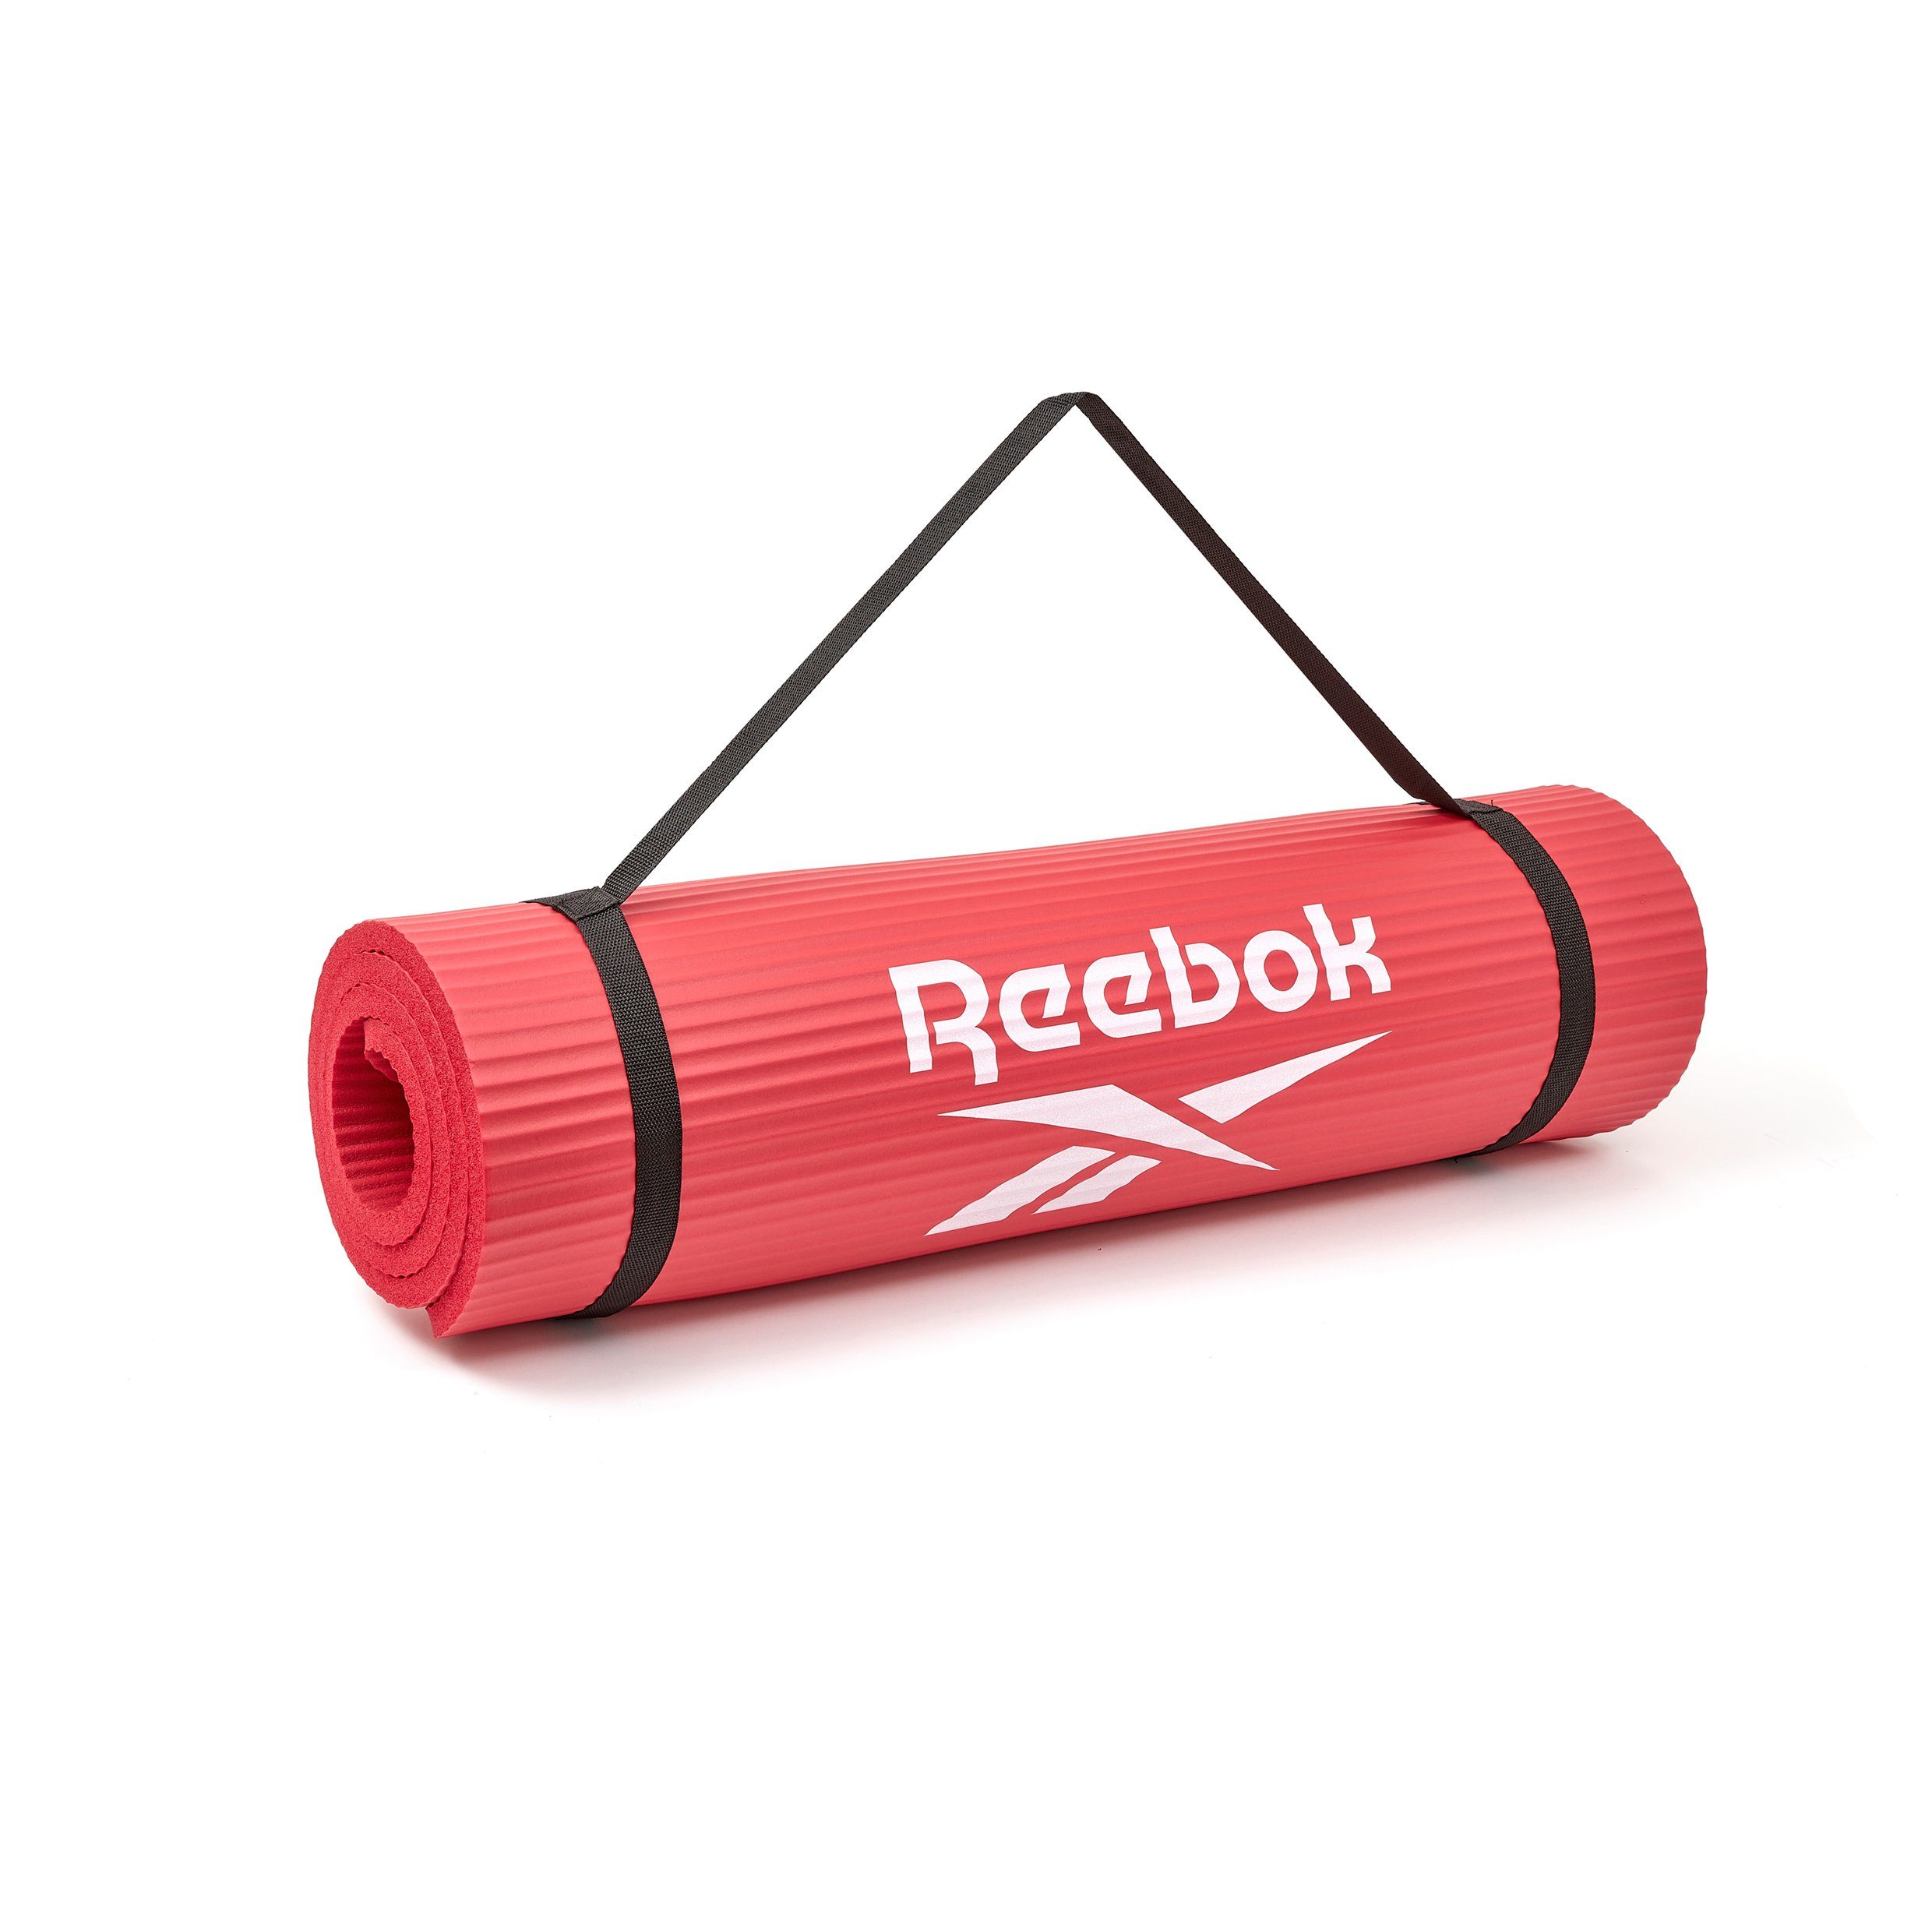 15mm, Fitnessmatte rot Reebok Reebok Rutschfeste Oberfläche Fitness-/Trainingsmatte,